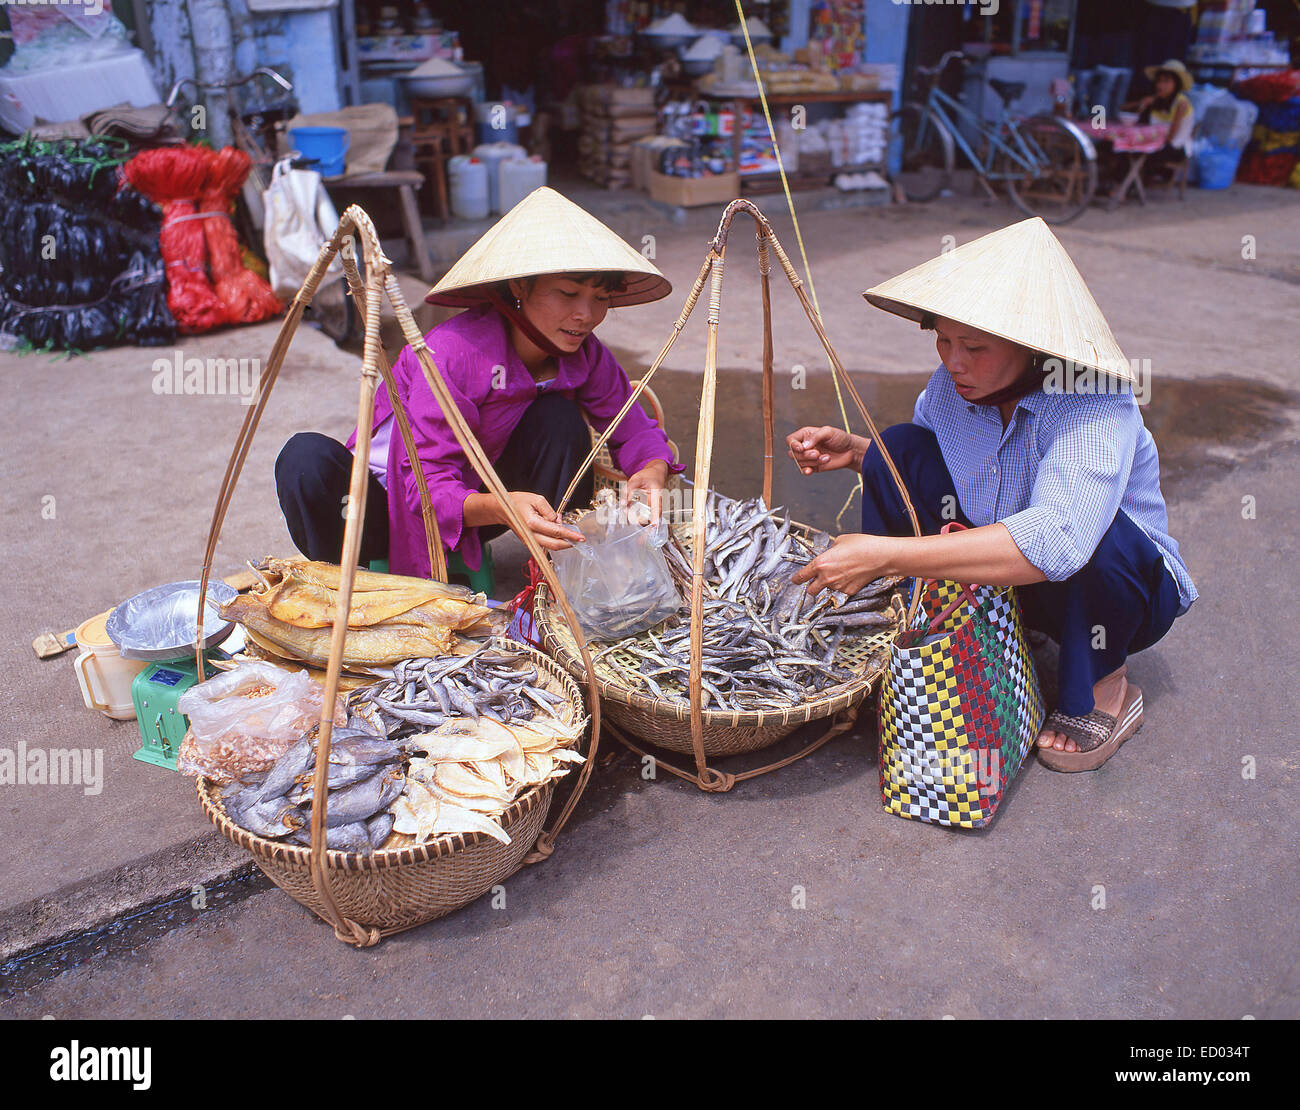 Les femmes vendent du poisson séché,Bình Tây Marché, Cholon, District 6, Ho Chi Minh Ville (Saigon), République socialiste du Vietnam Banque D'Images